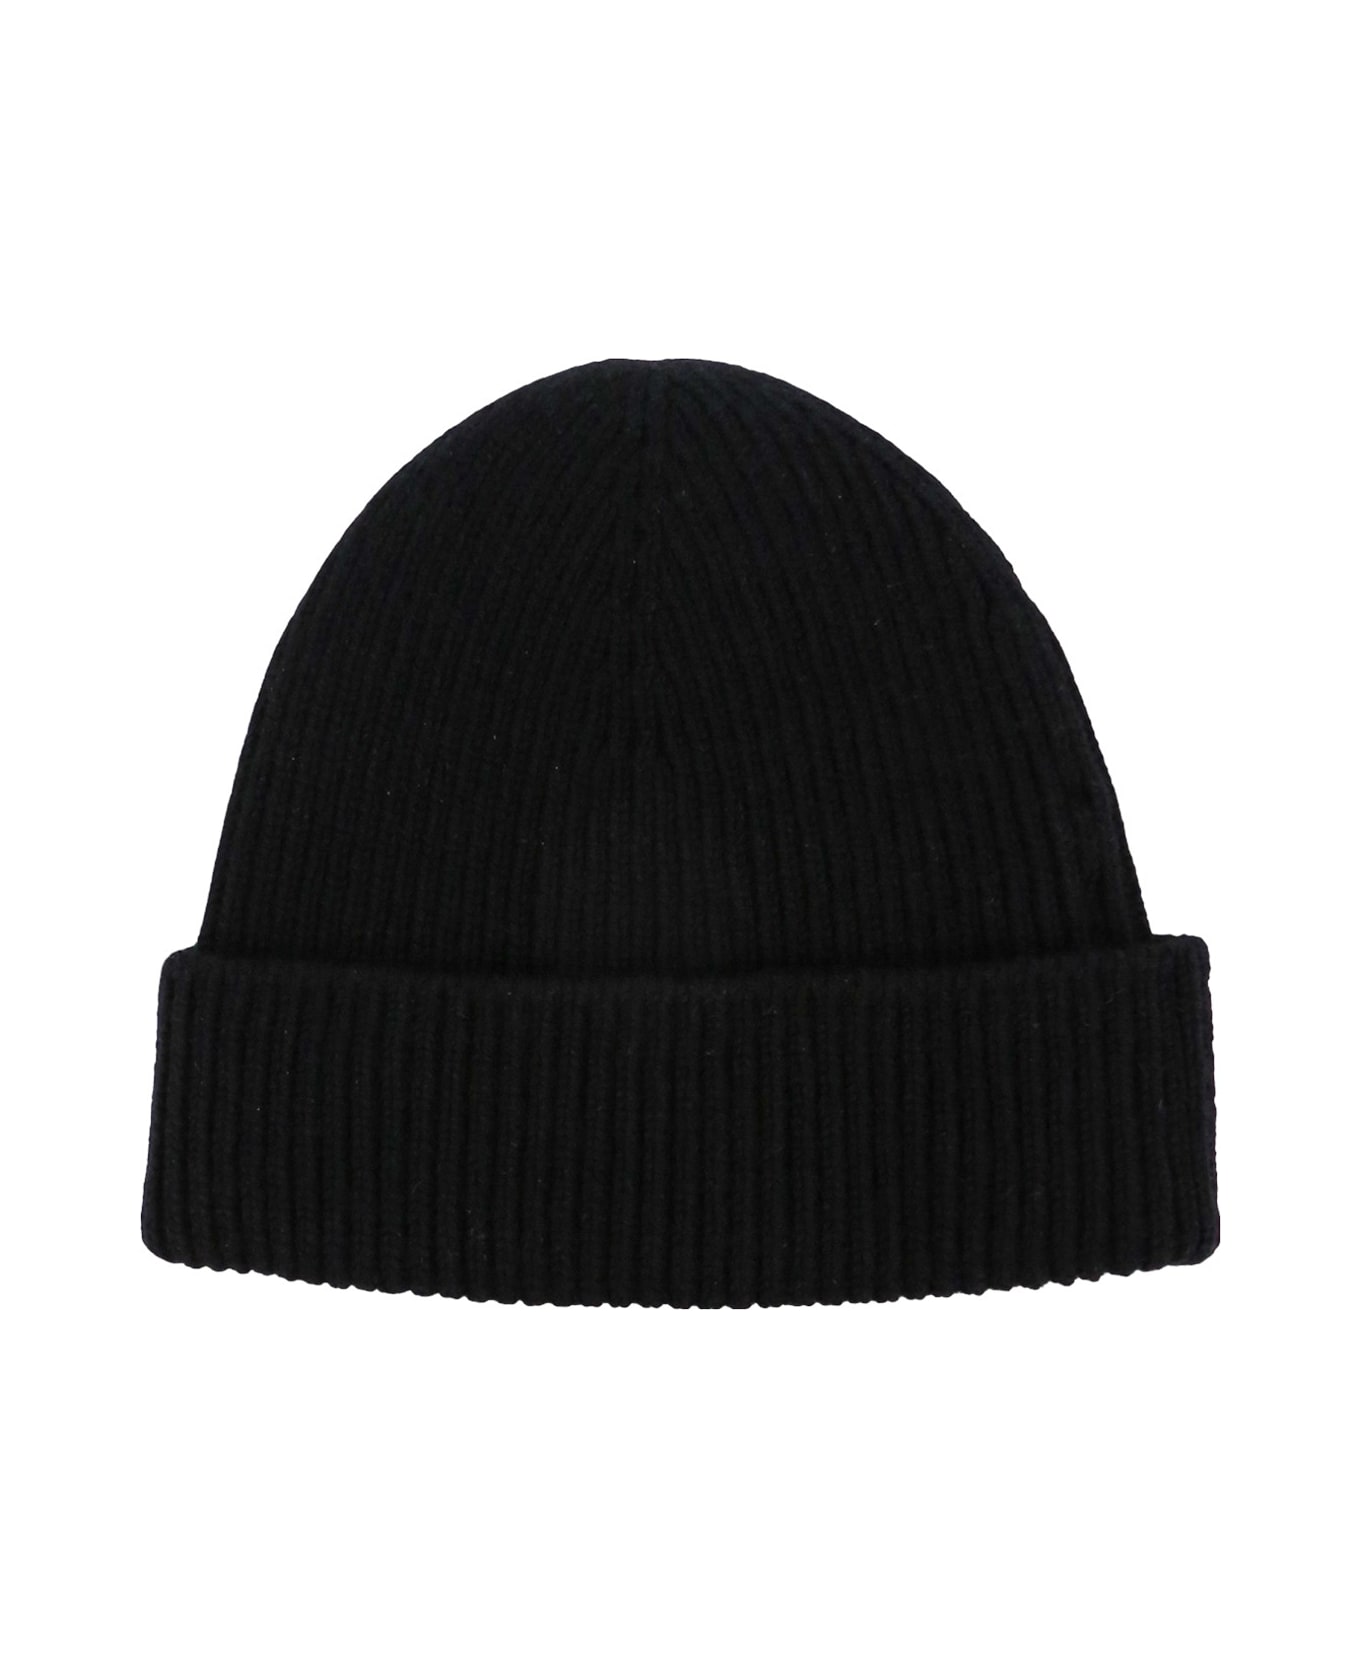 Burberry Ekd Beanie - Black 帽子